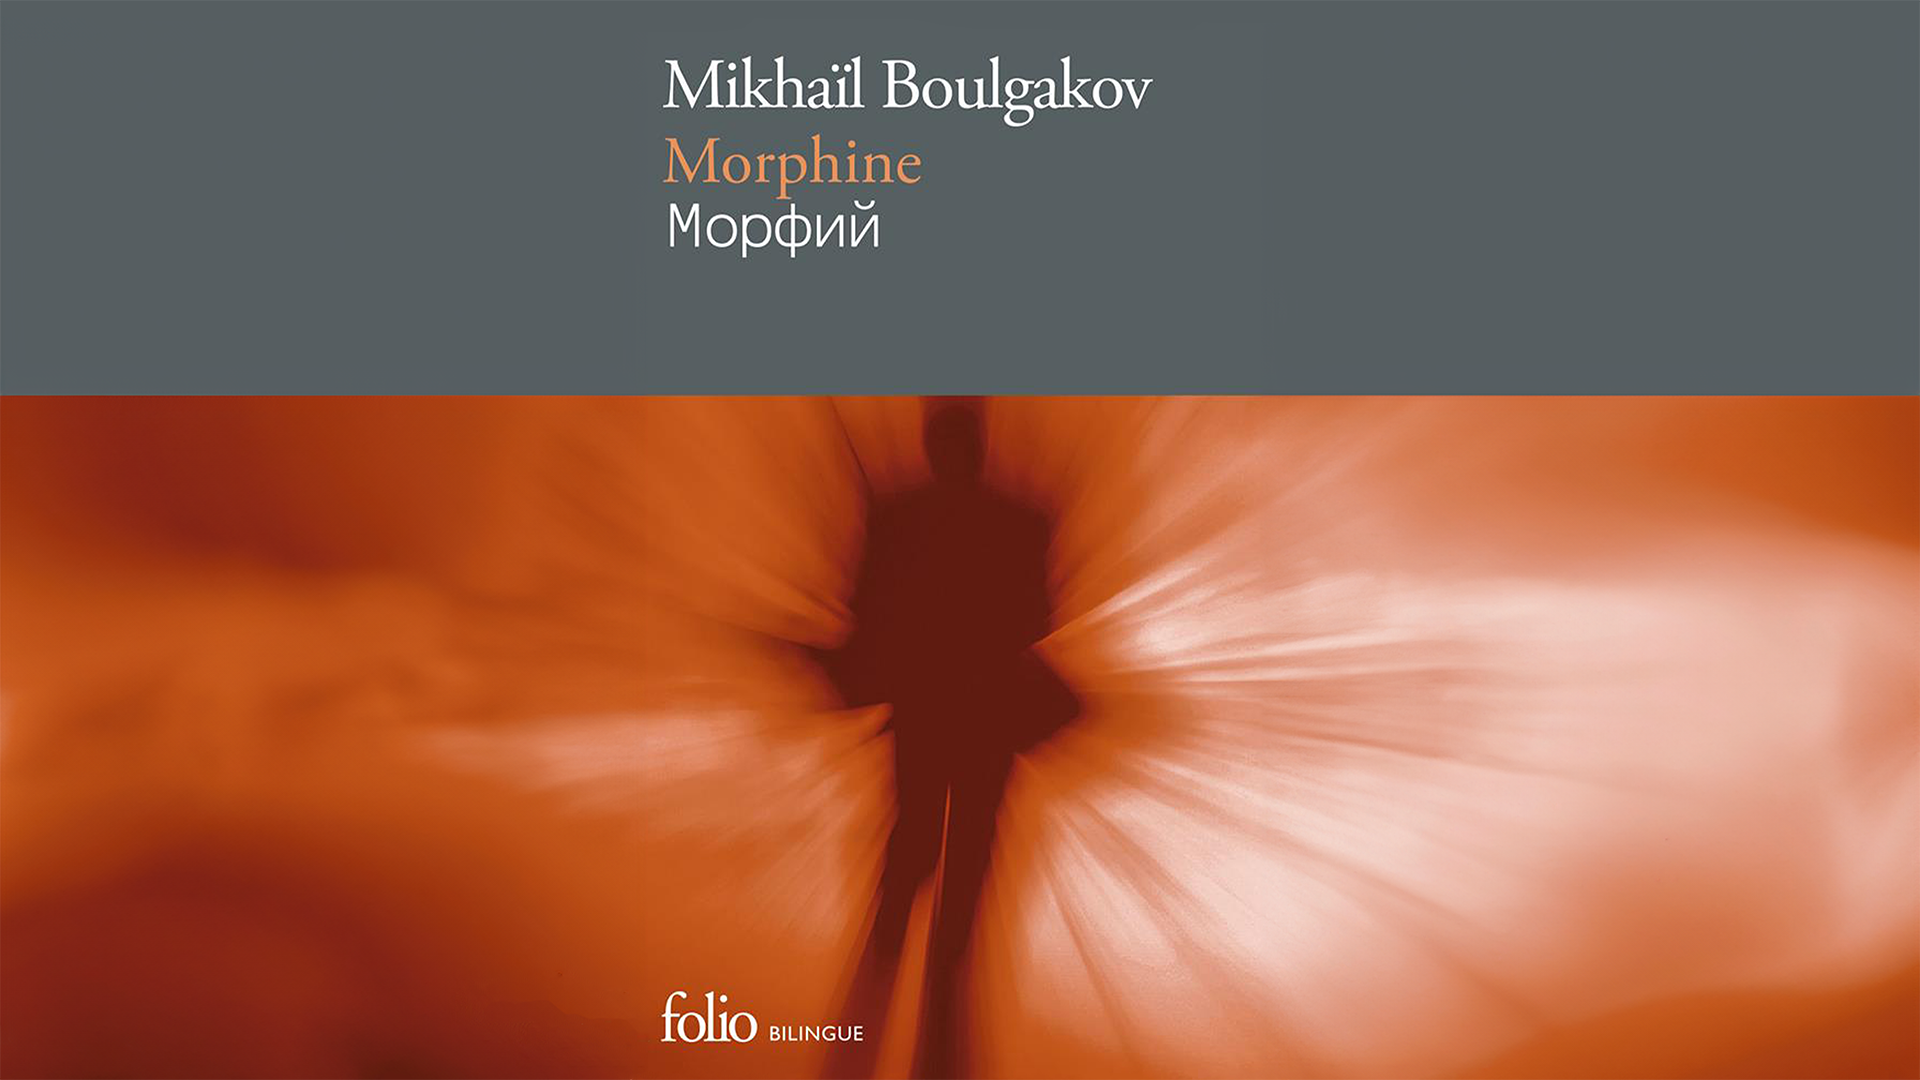 DÉTAILS DU FICHIER JOINT Livre-Morphine-Mikhail-Boulgakov-Folio